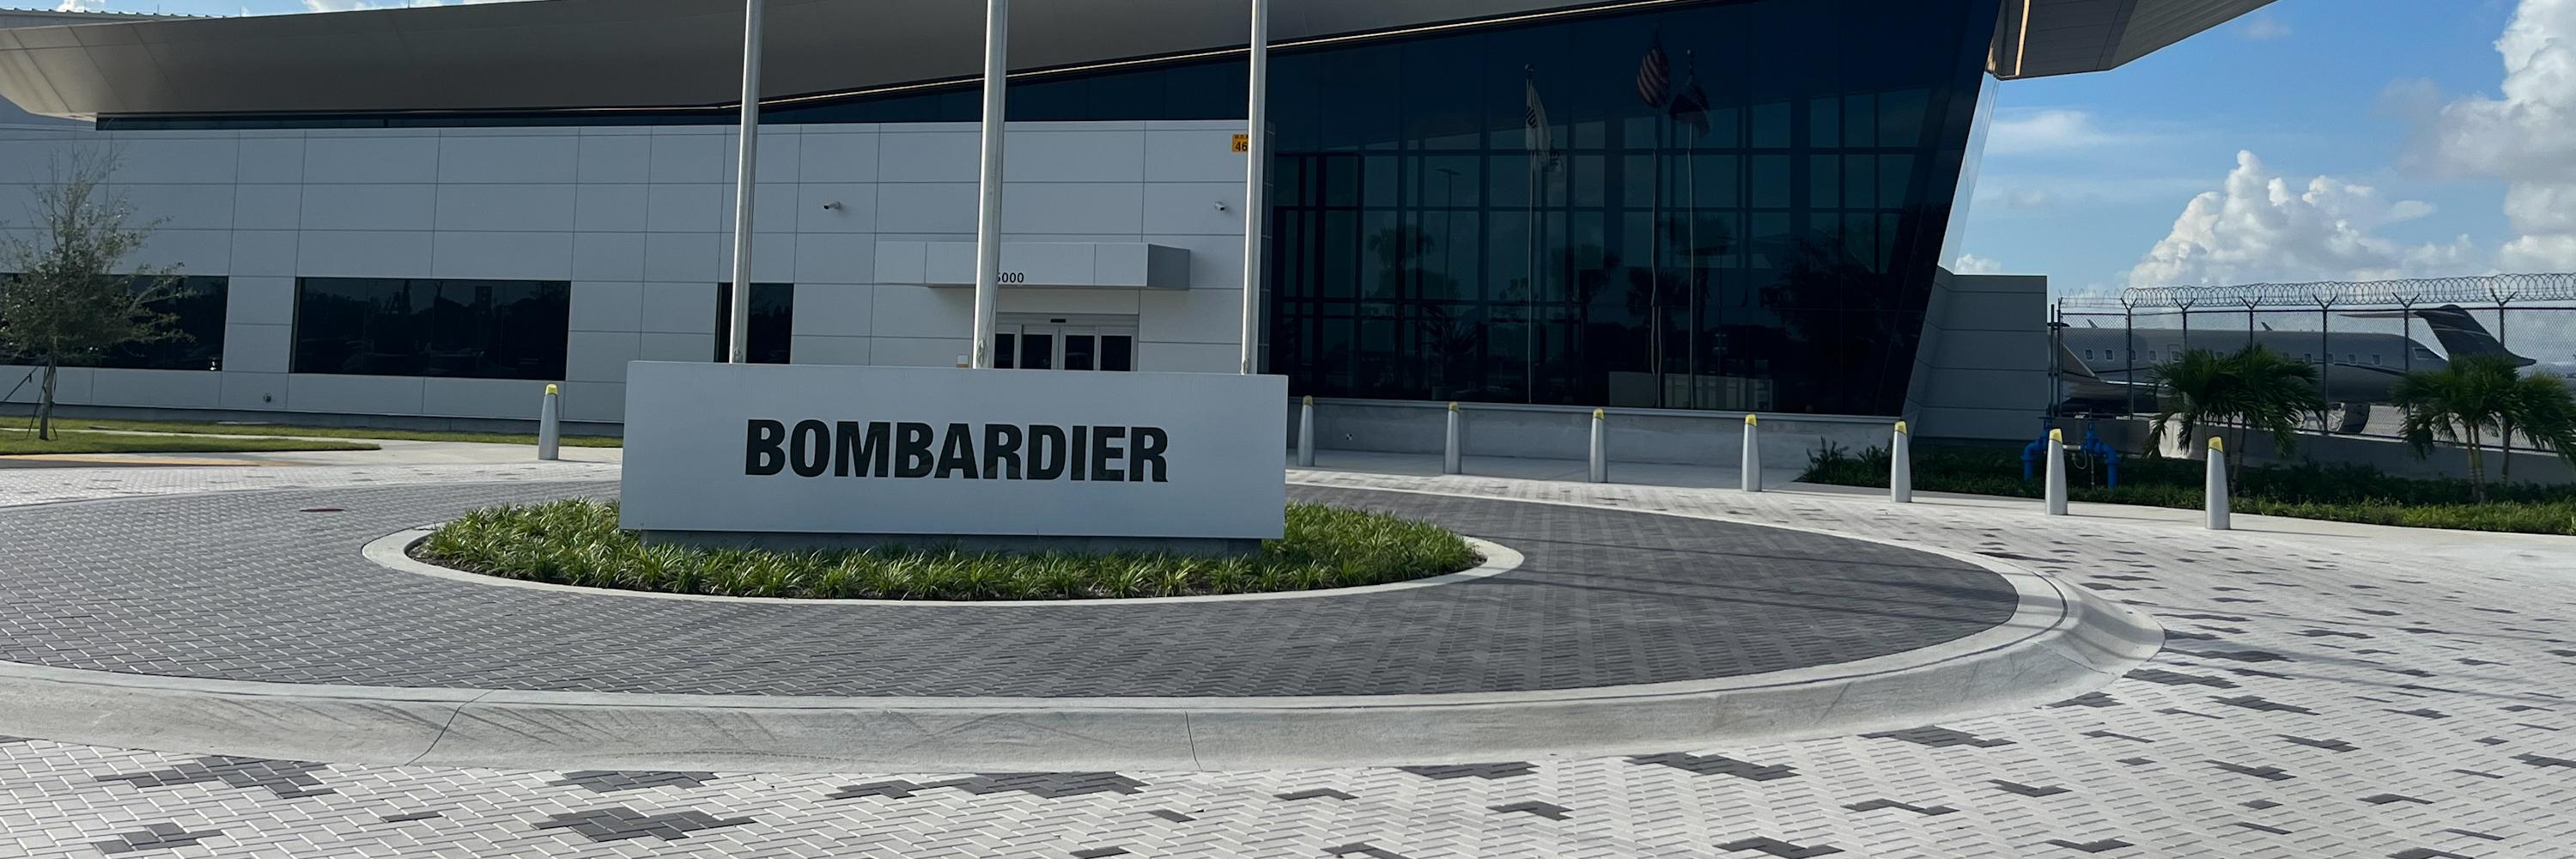 new bombardier facility in Miami, Florida 